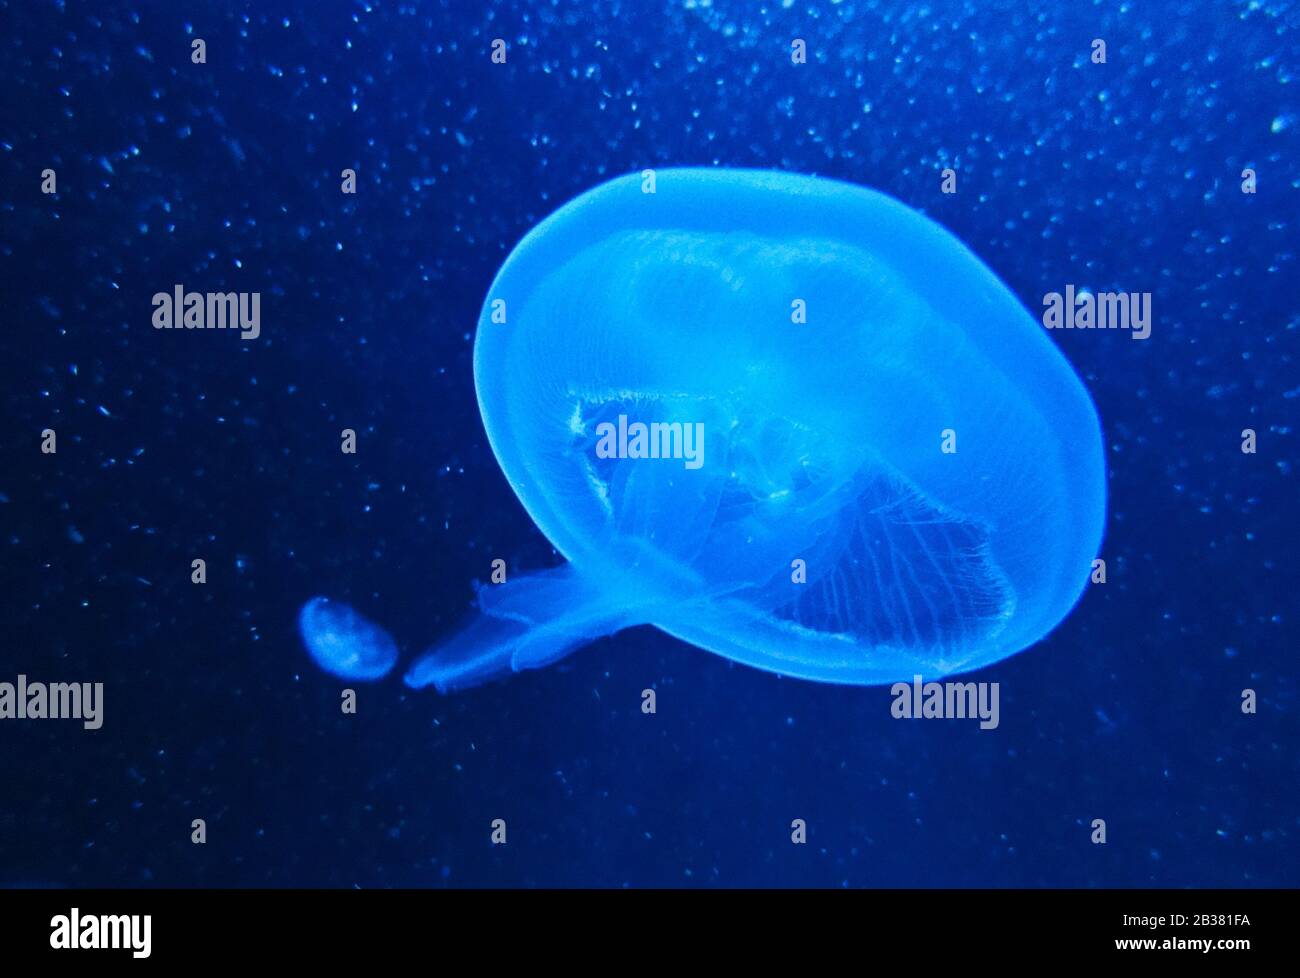 Ohrenqualle / moon jellyfish / aurelia aurita; kontrollierte Bedingungen, controlled conditions Stock Photo